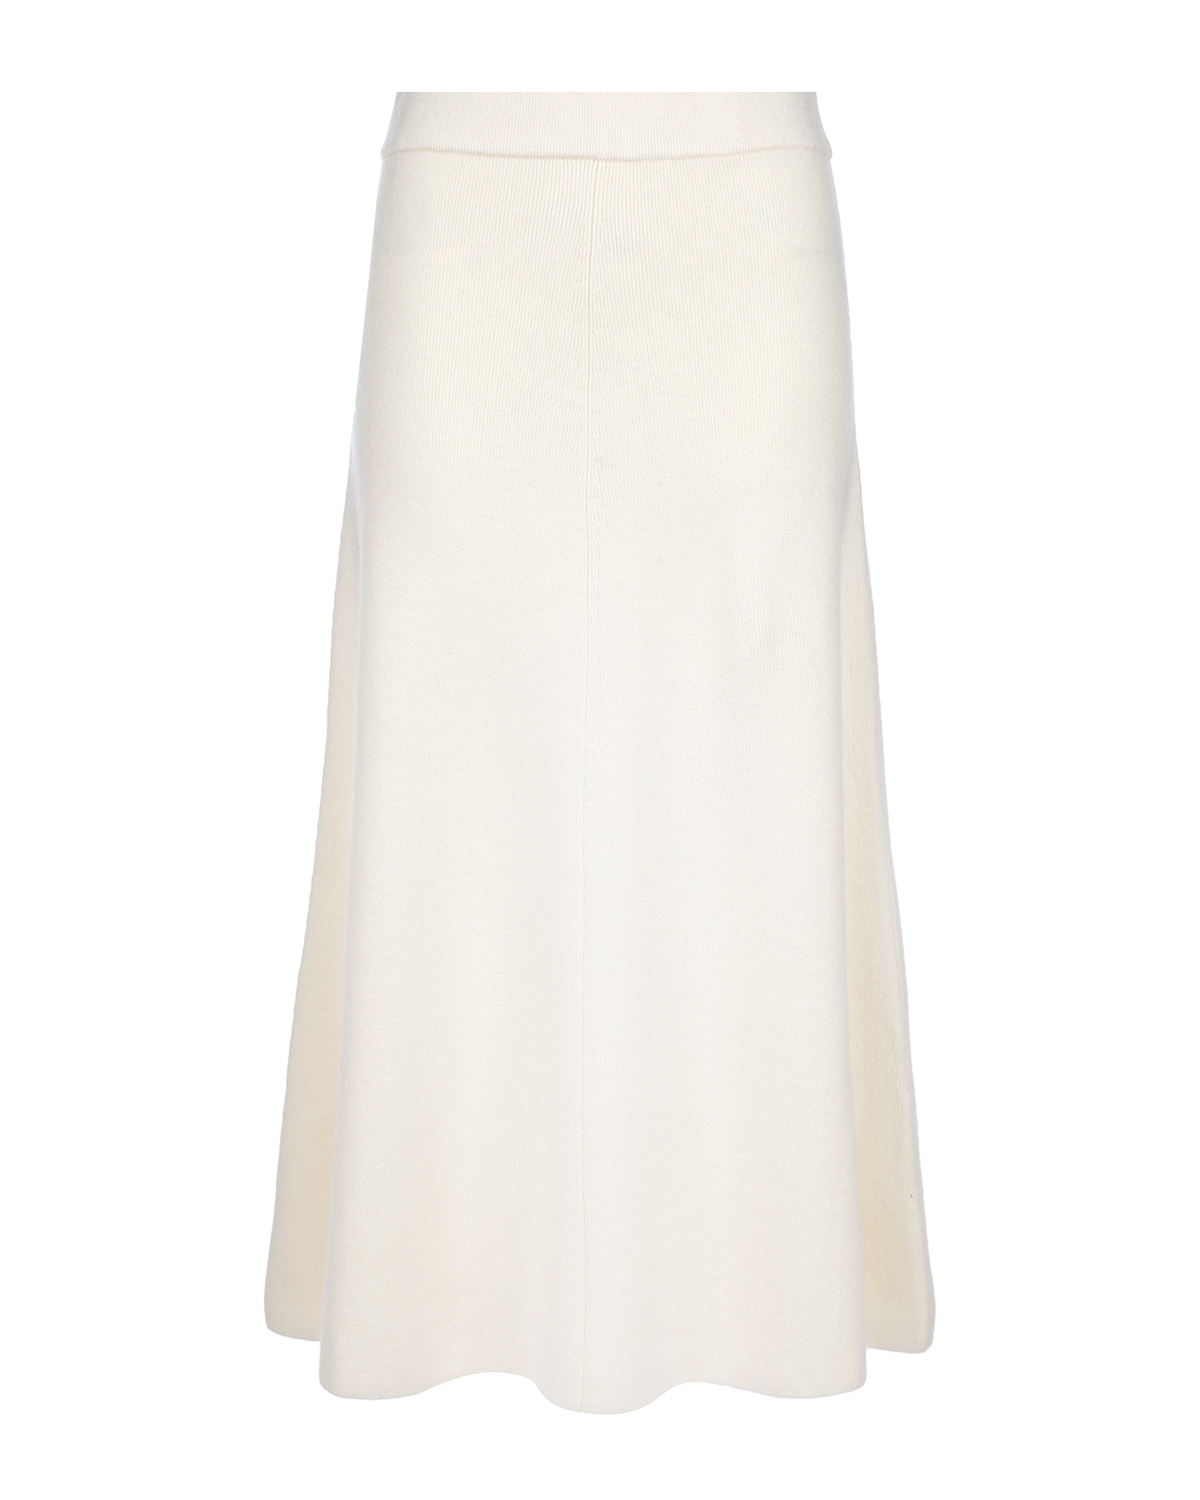 Кашемировая юбка молочного цвета Arch4, размер 40 - фото 1